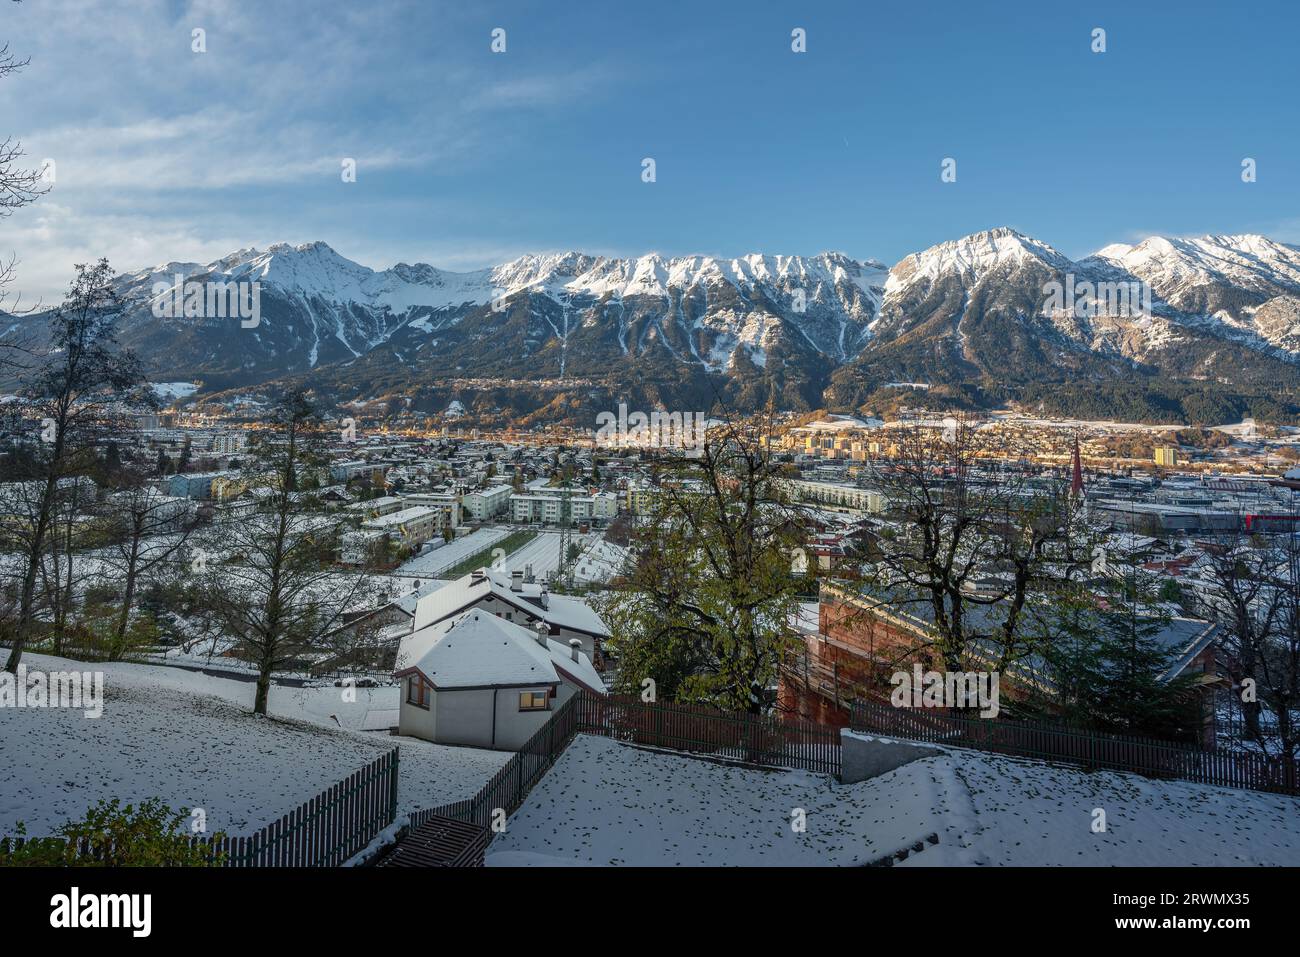 Blick auf Innsbruck mit Schnee und Karwendelgebirge - Innsbruck, Österreich Stockfoto